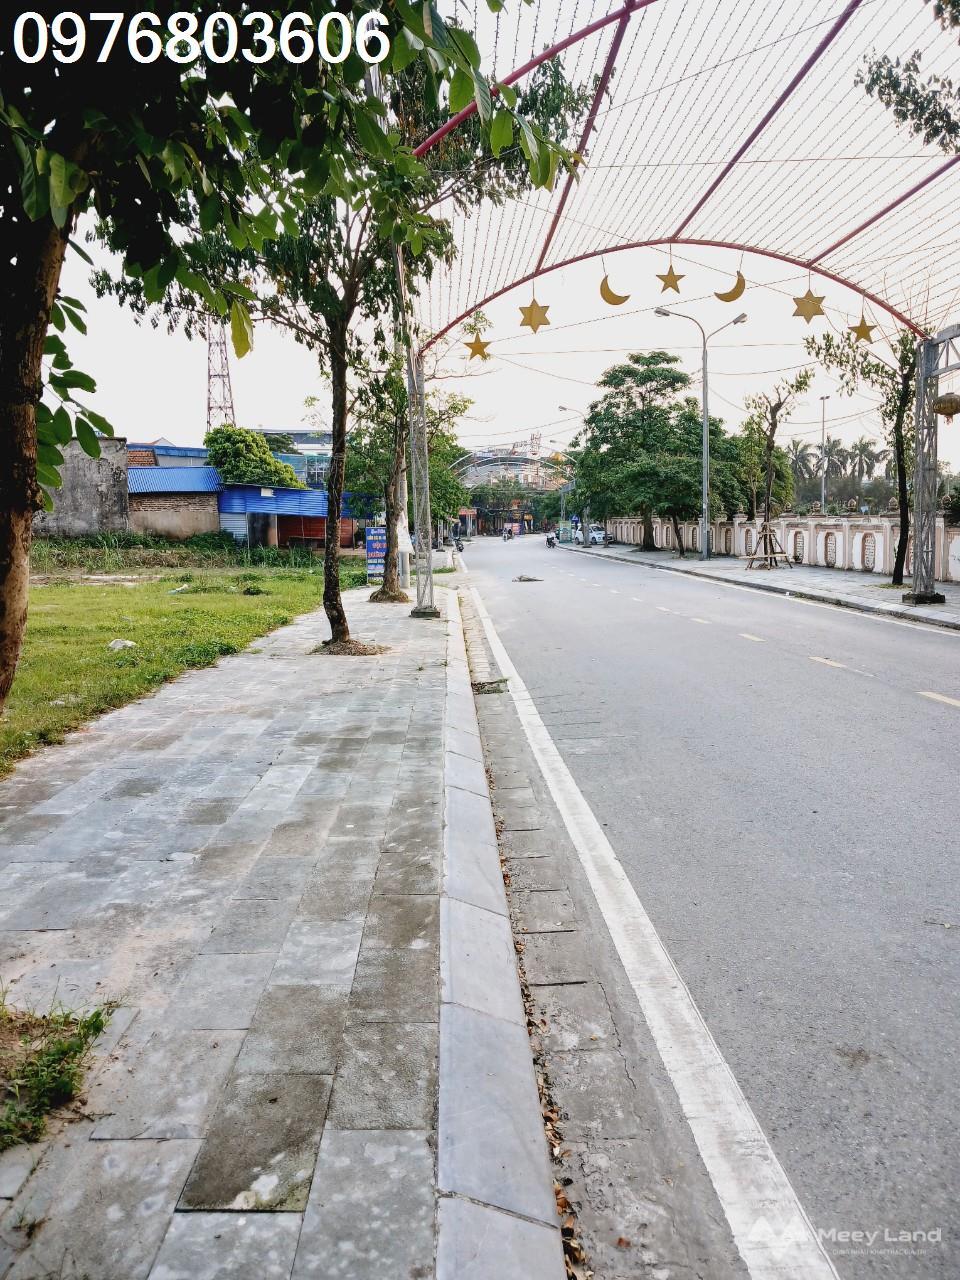 Mặt phố đi bộ trước mặt quảng trường cũ Phổ Yên duy nhất 1 lô đất rông hơn 1000m2